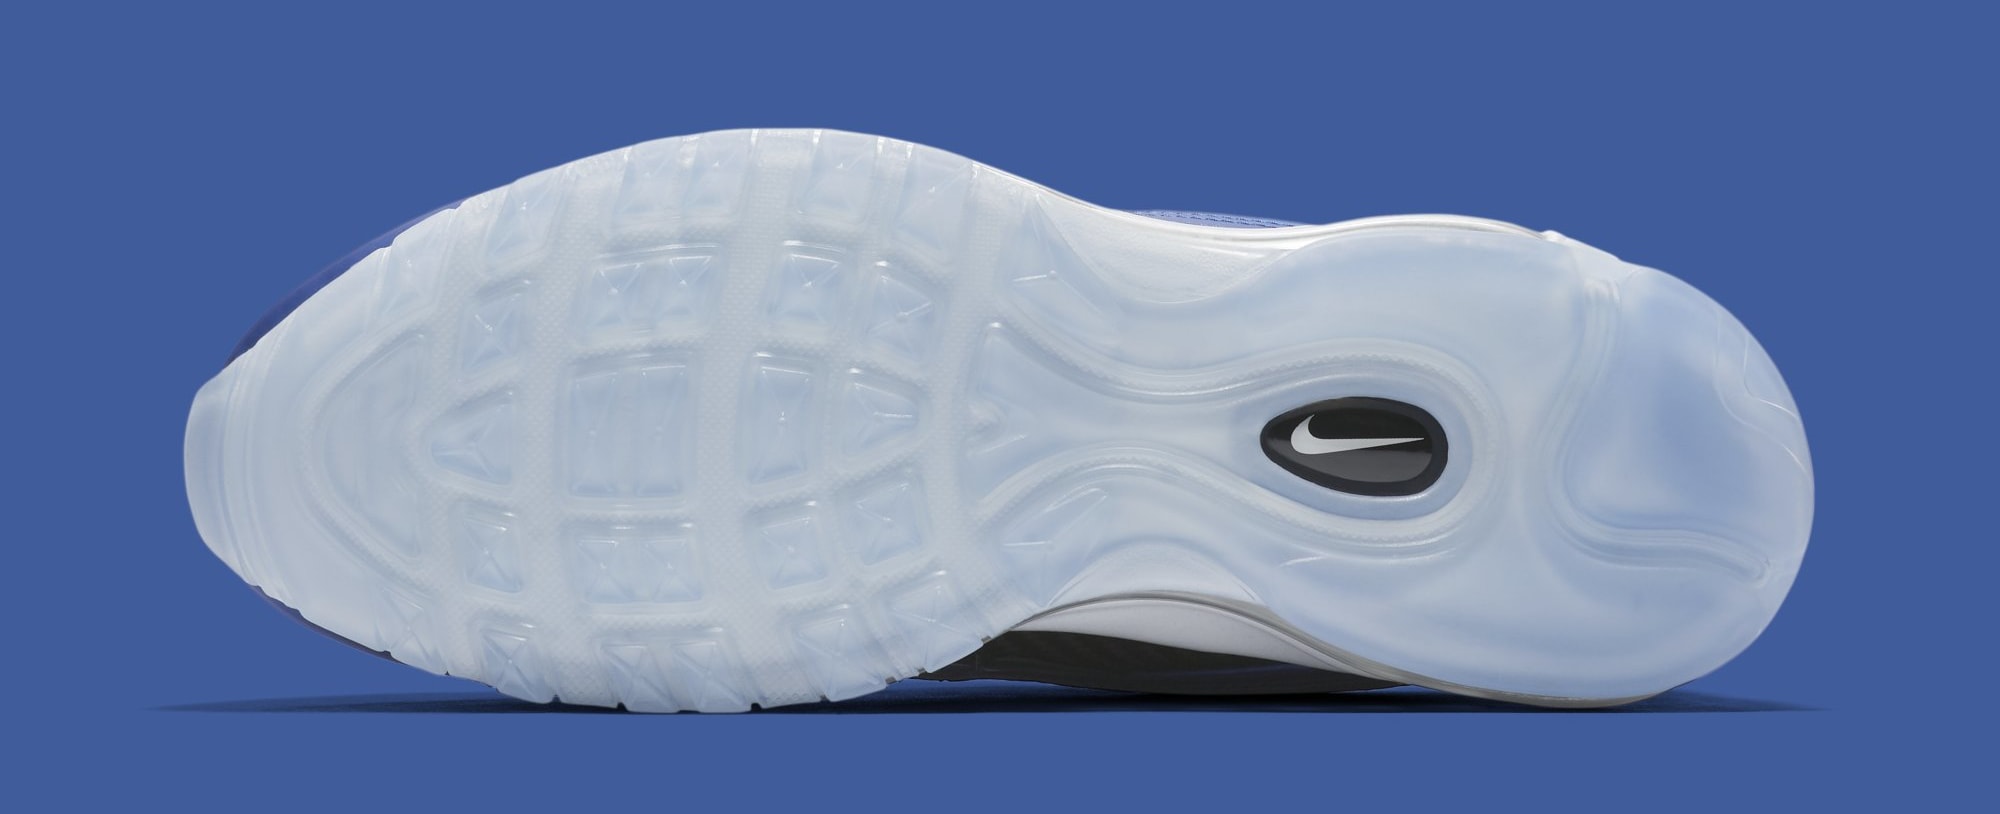 Nike Air Max 97 &#x27;Foamposite&#x27; CI5011-400 (Bottom)